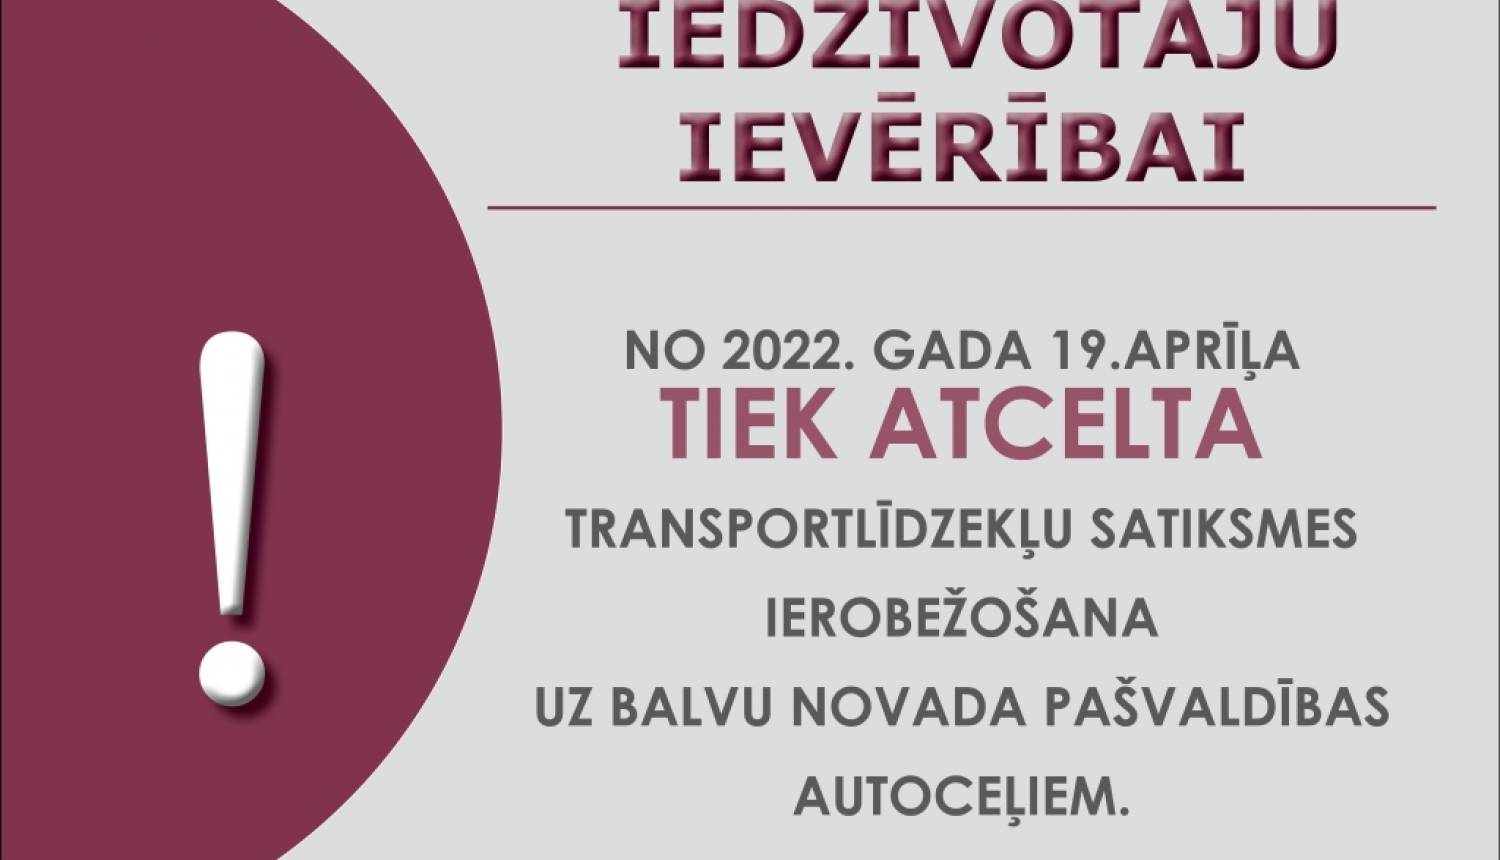 No 19.aprīļa tiek ATCELTA transportlīdzekļu satiksmes ierobežošana uz Balvu novada pašvaldības autoceļiem!